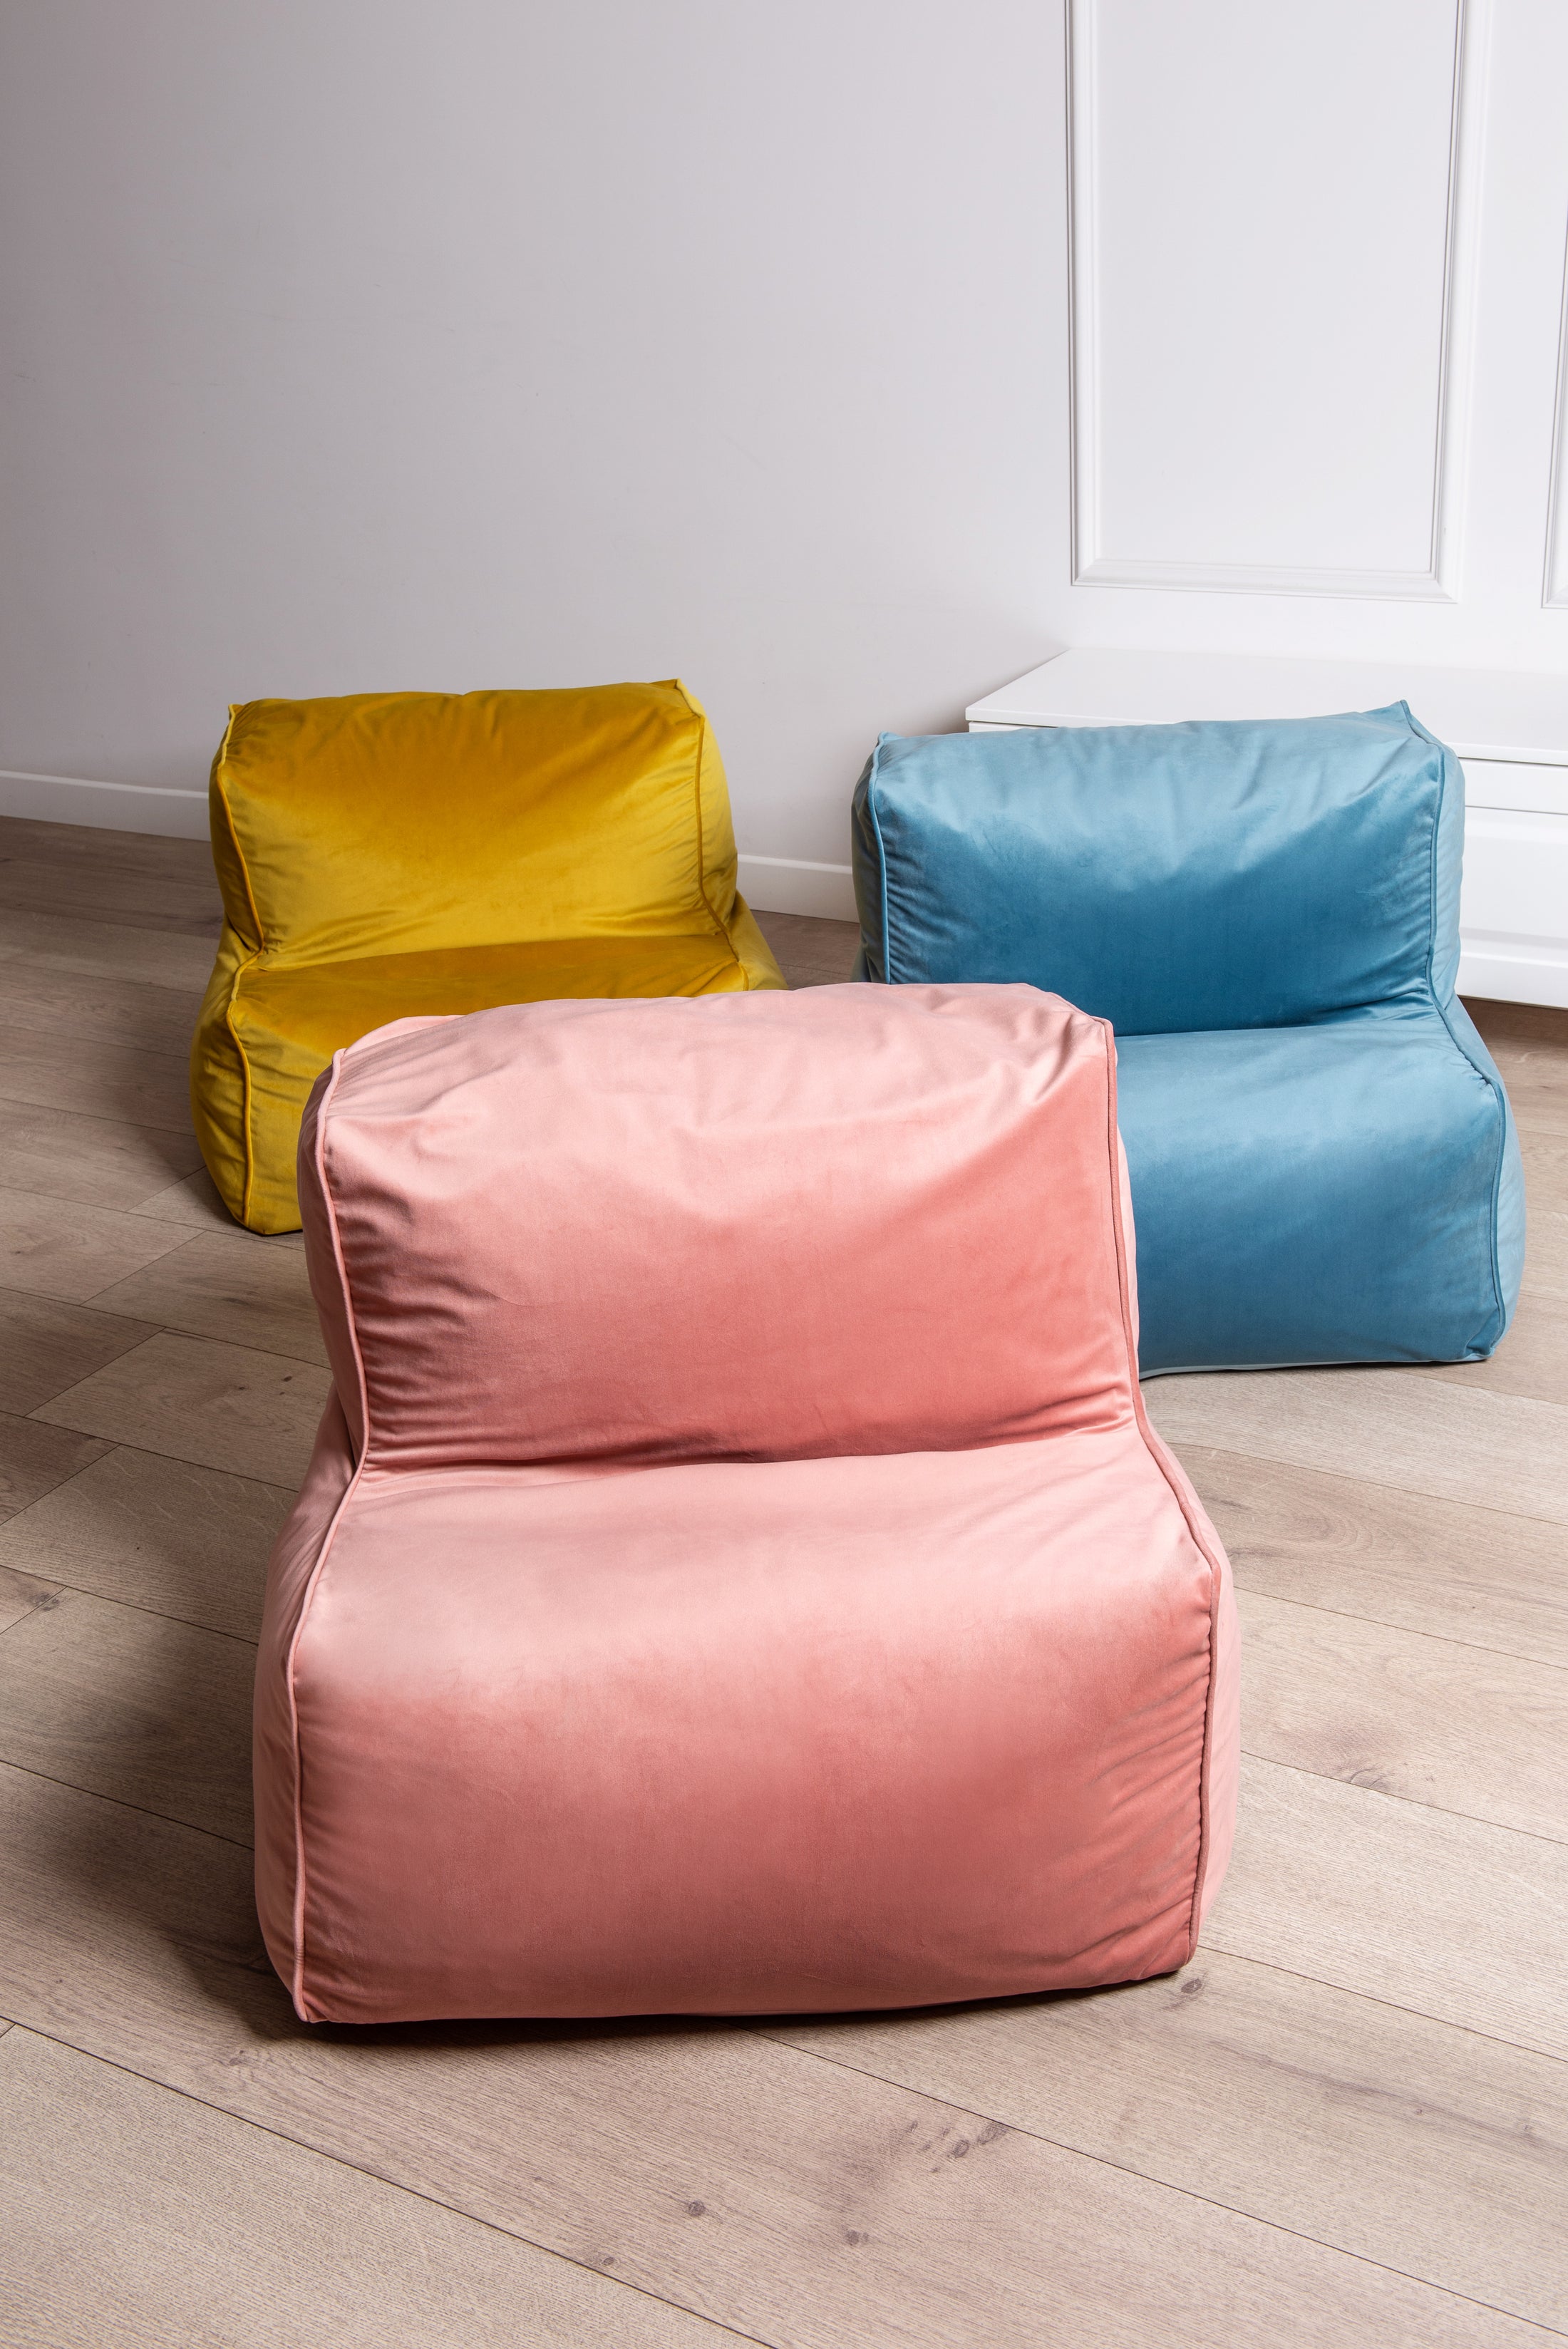 Modułowy Fotel Pufa ELKA Velvet - Aksamitny Komfort i Estetyka, Idealny do Każdego Wnętrza, Dostępny w Różnych Kolorach